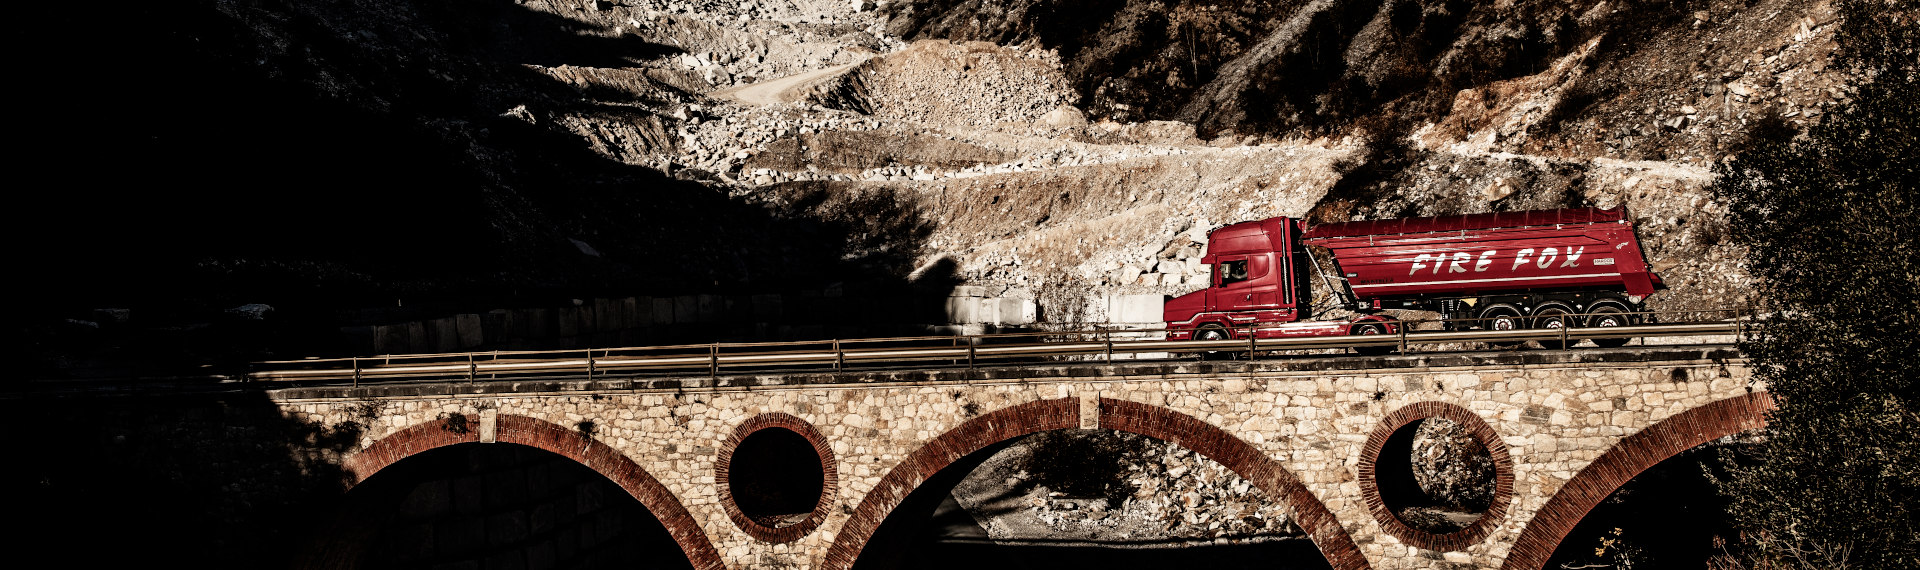 Um caminhão Fire Fox vermelho, feito com a chapa de aço Hardox 500 Tuf, cruzando uma ponte